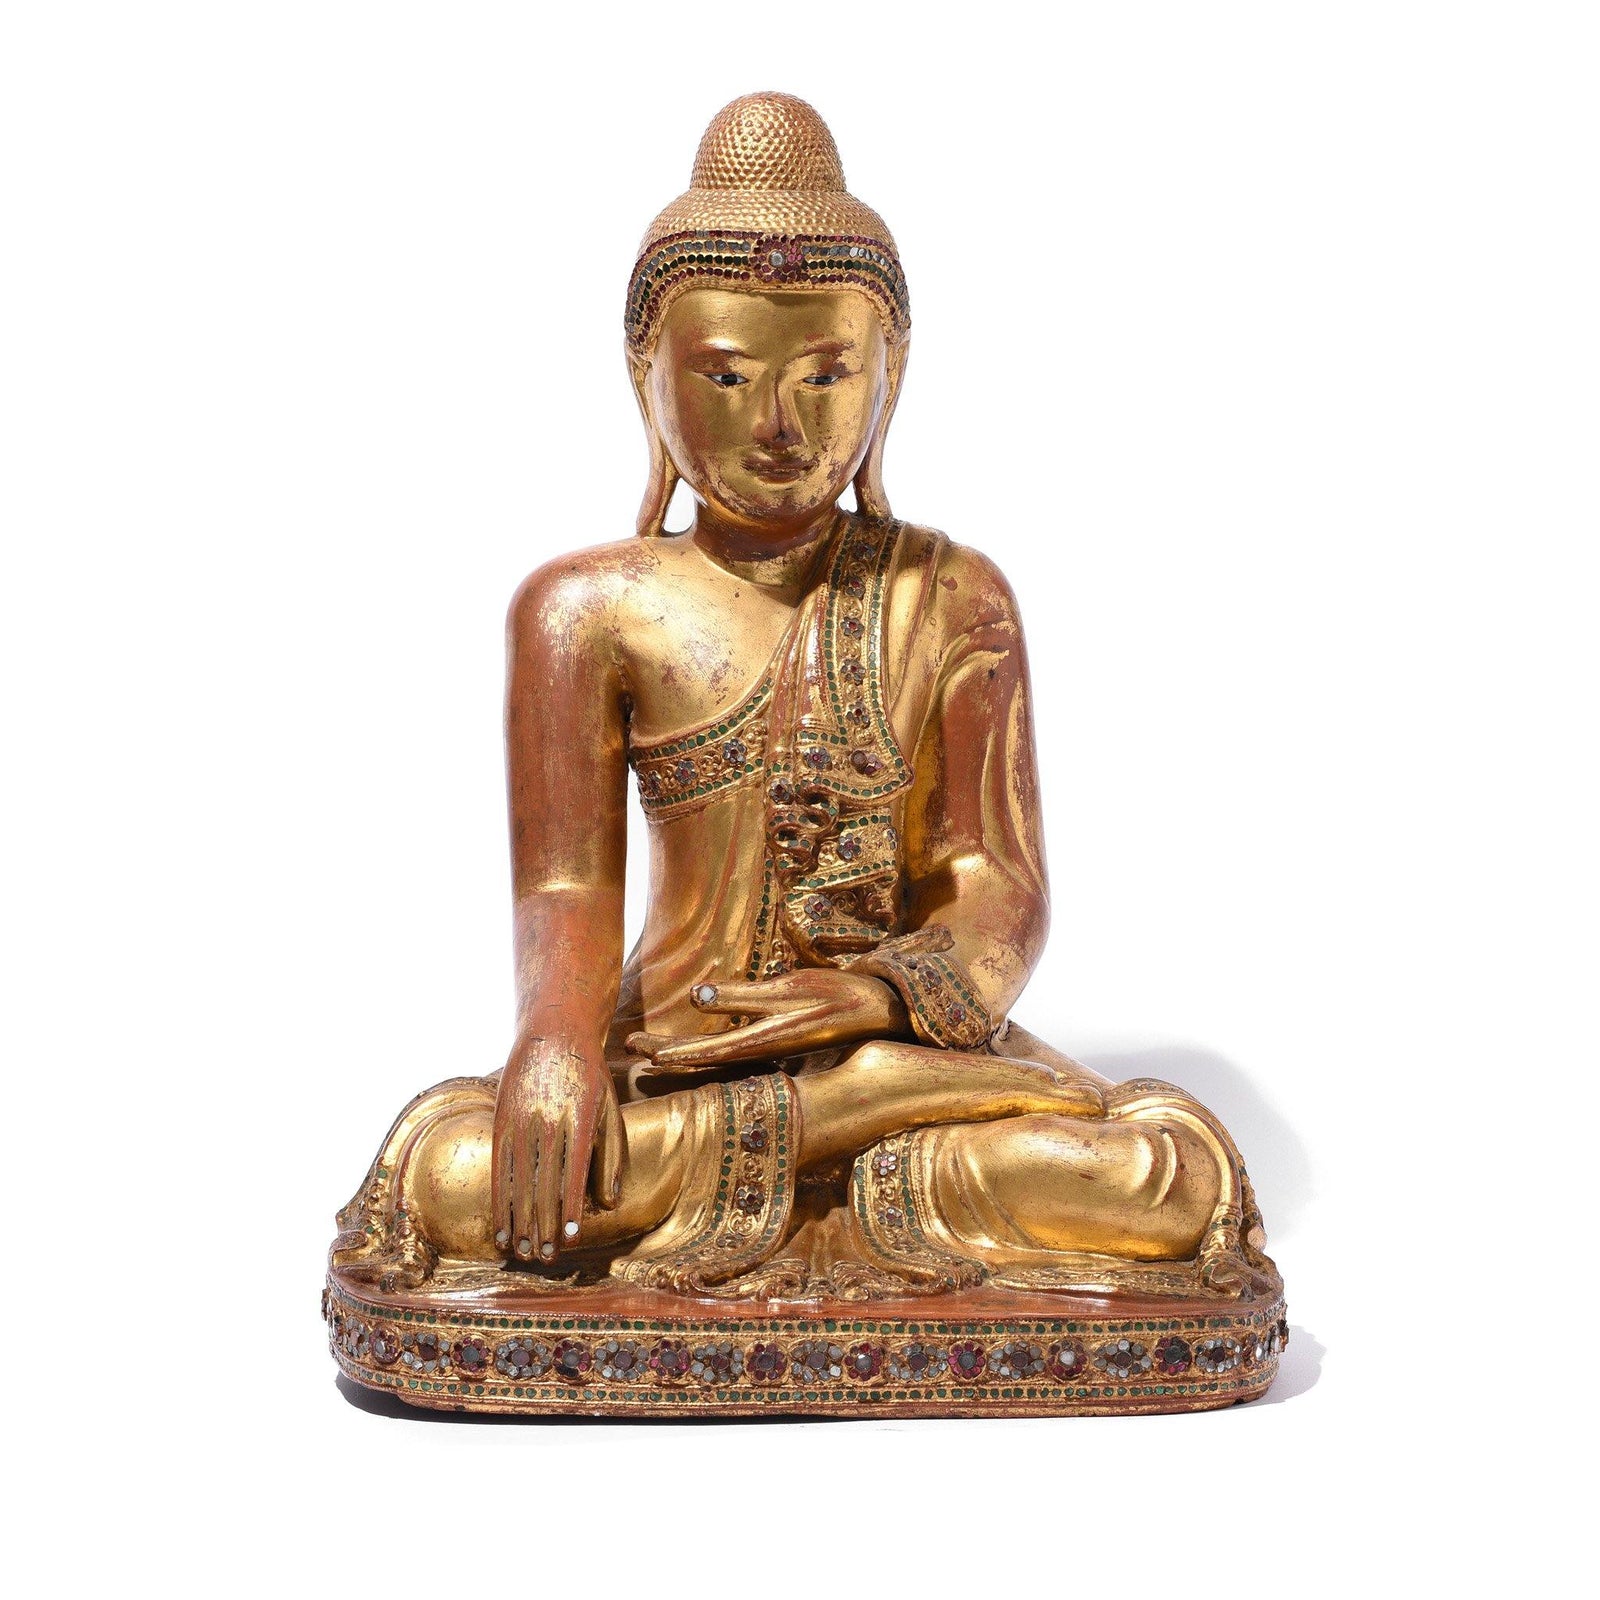 Gilded Teak Burmese Buddha From Mandalay - 19thC | Indigo Antiques